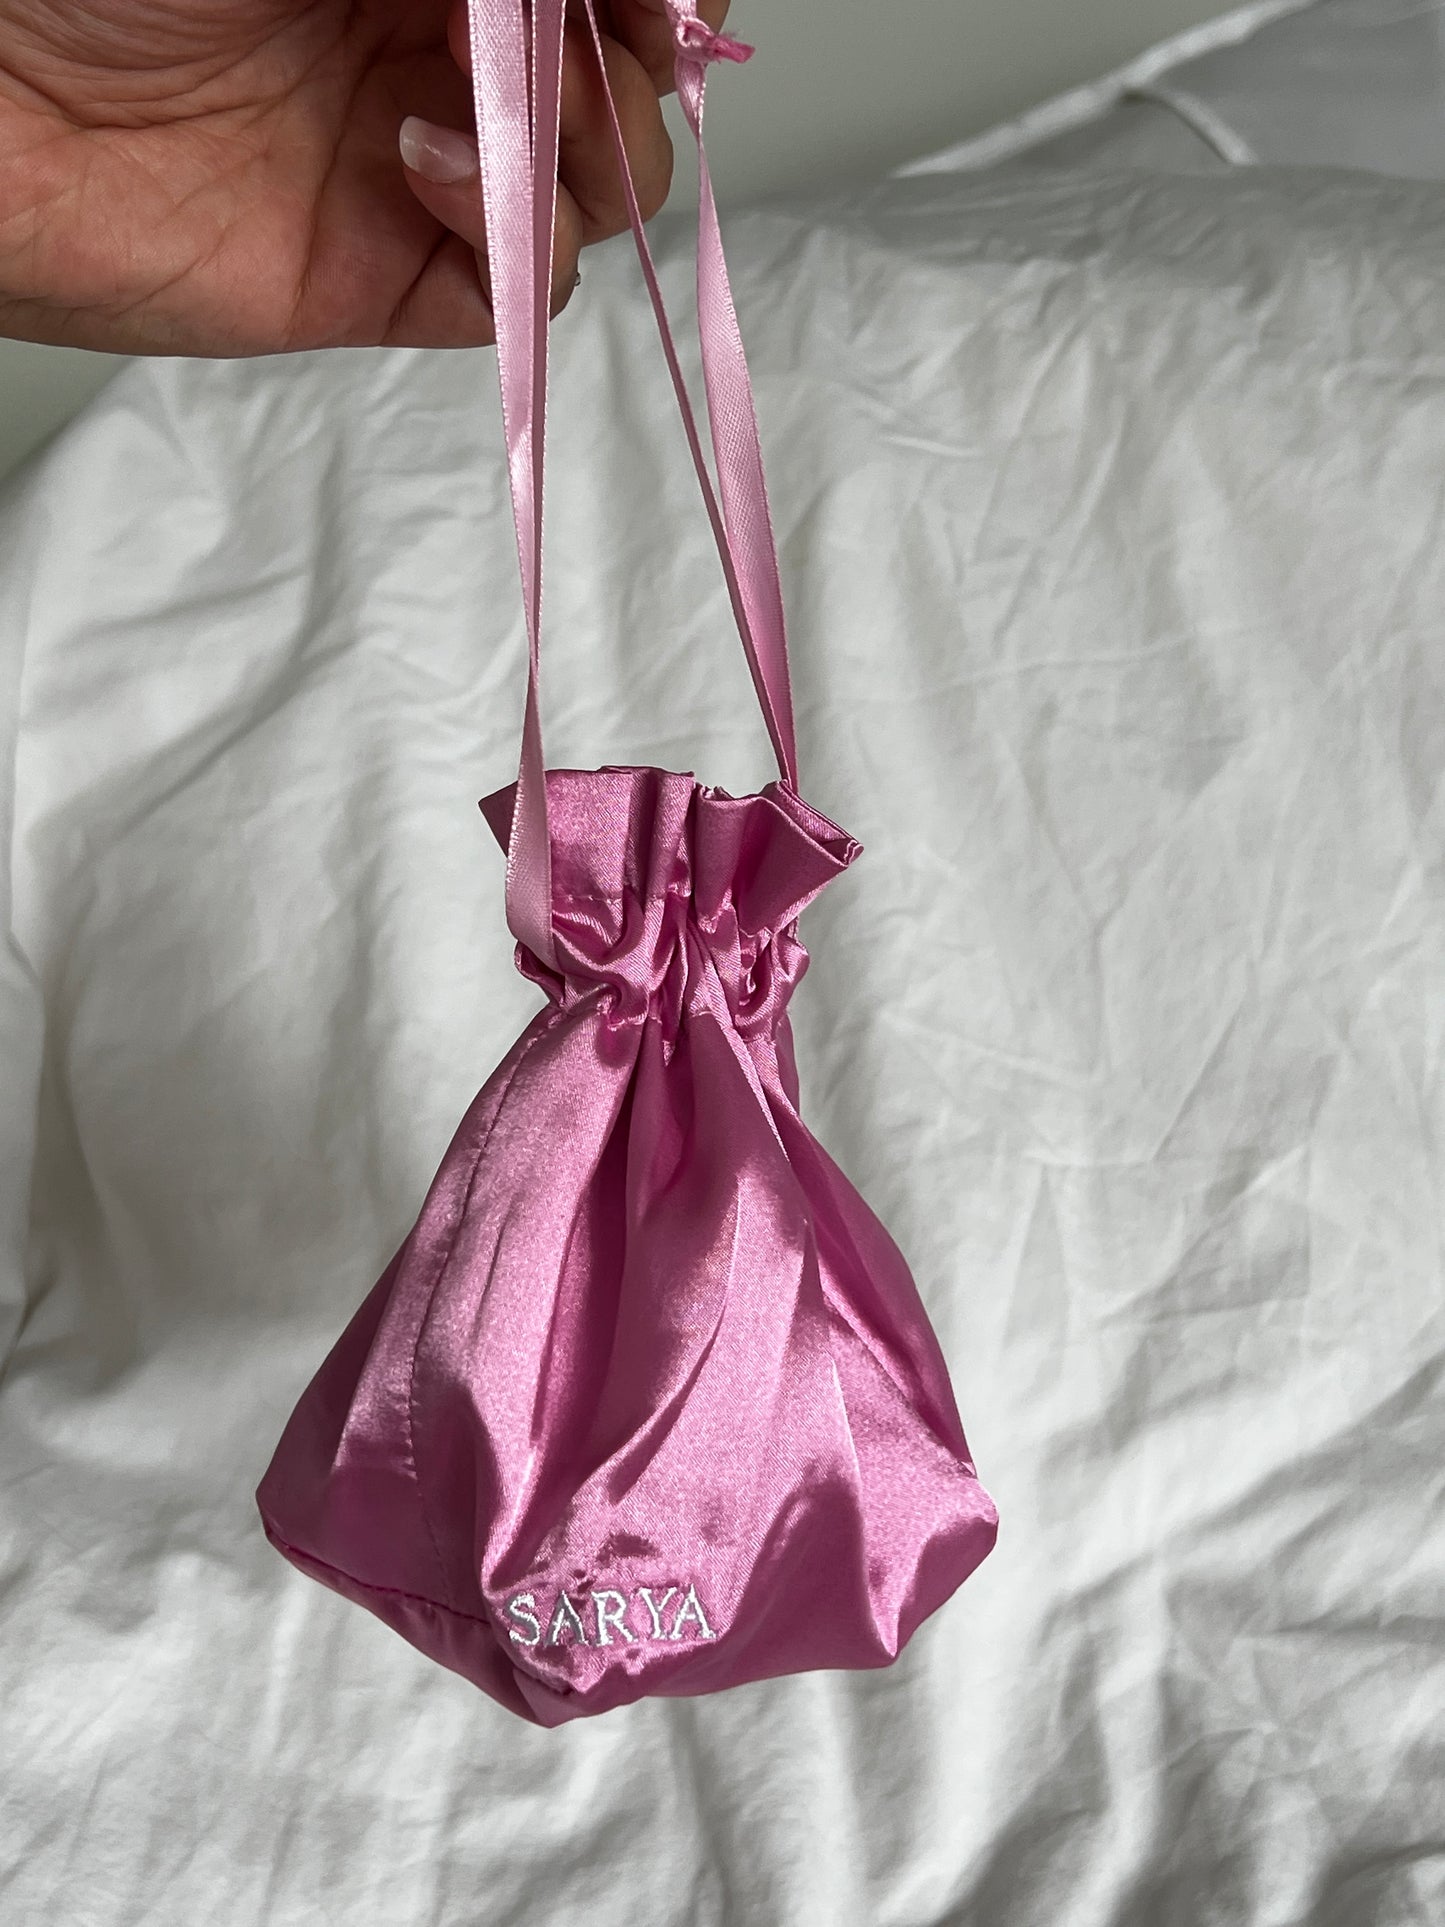 Small satin bag